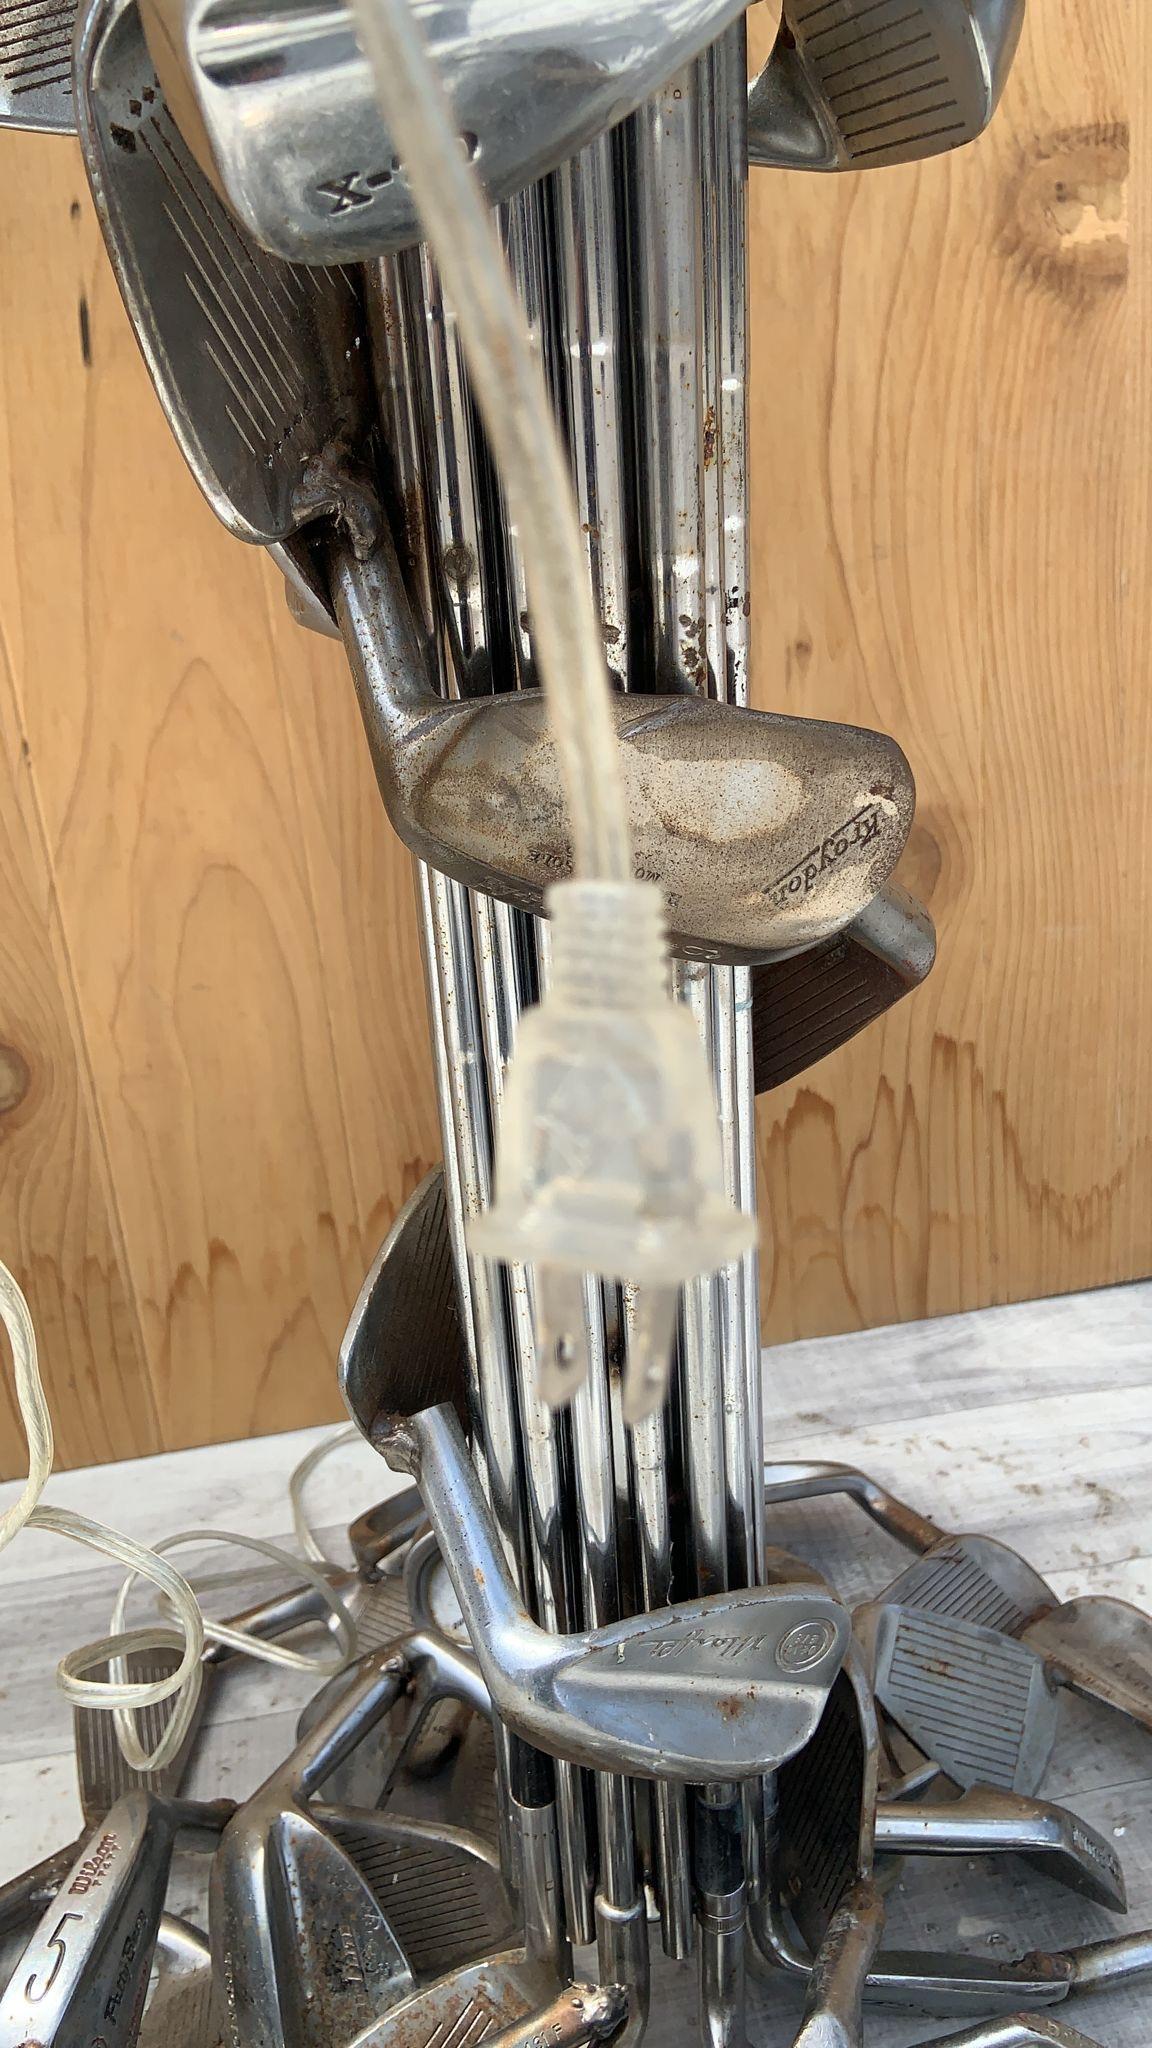 Lampe de table vintage forgée à la main avec abat-jour en forme de club de golf Silhouette

Cette lampe a été entièrement forgée en acier inoxydable vintage gulf clubs de sa base à son abat-jour. Il s'agit d'une pièce incroyablement robuste. Cette